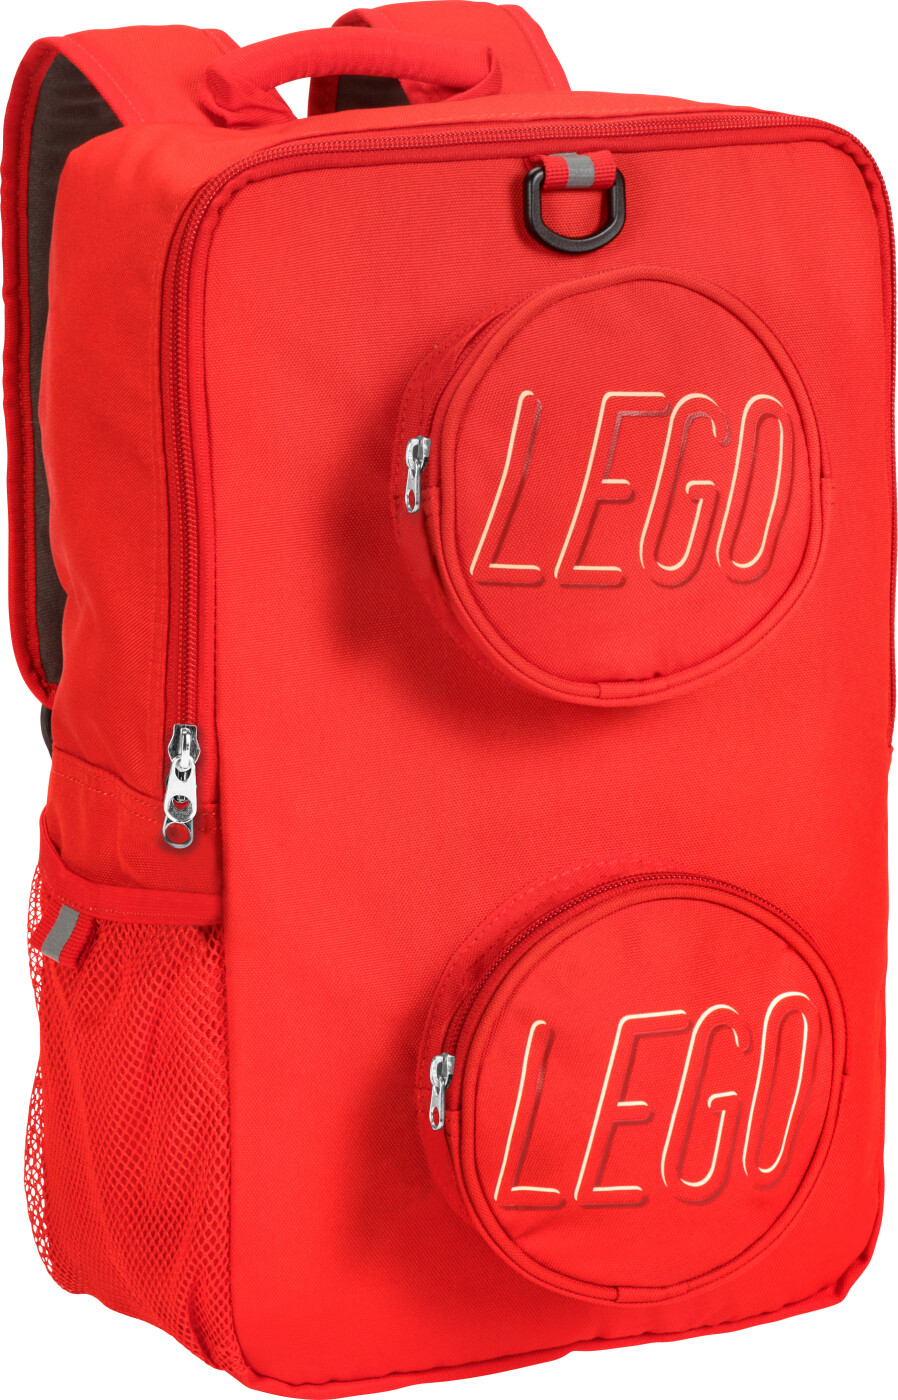 Billede af Lego - Legoklods Rygsæk - 18 L - Rød